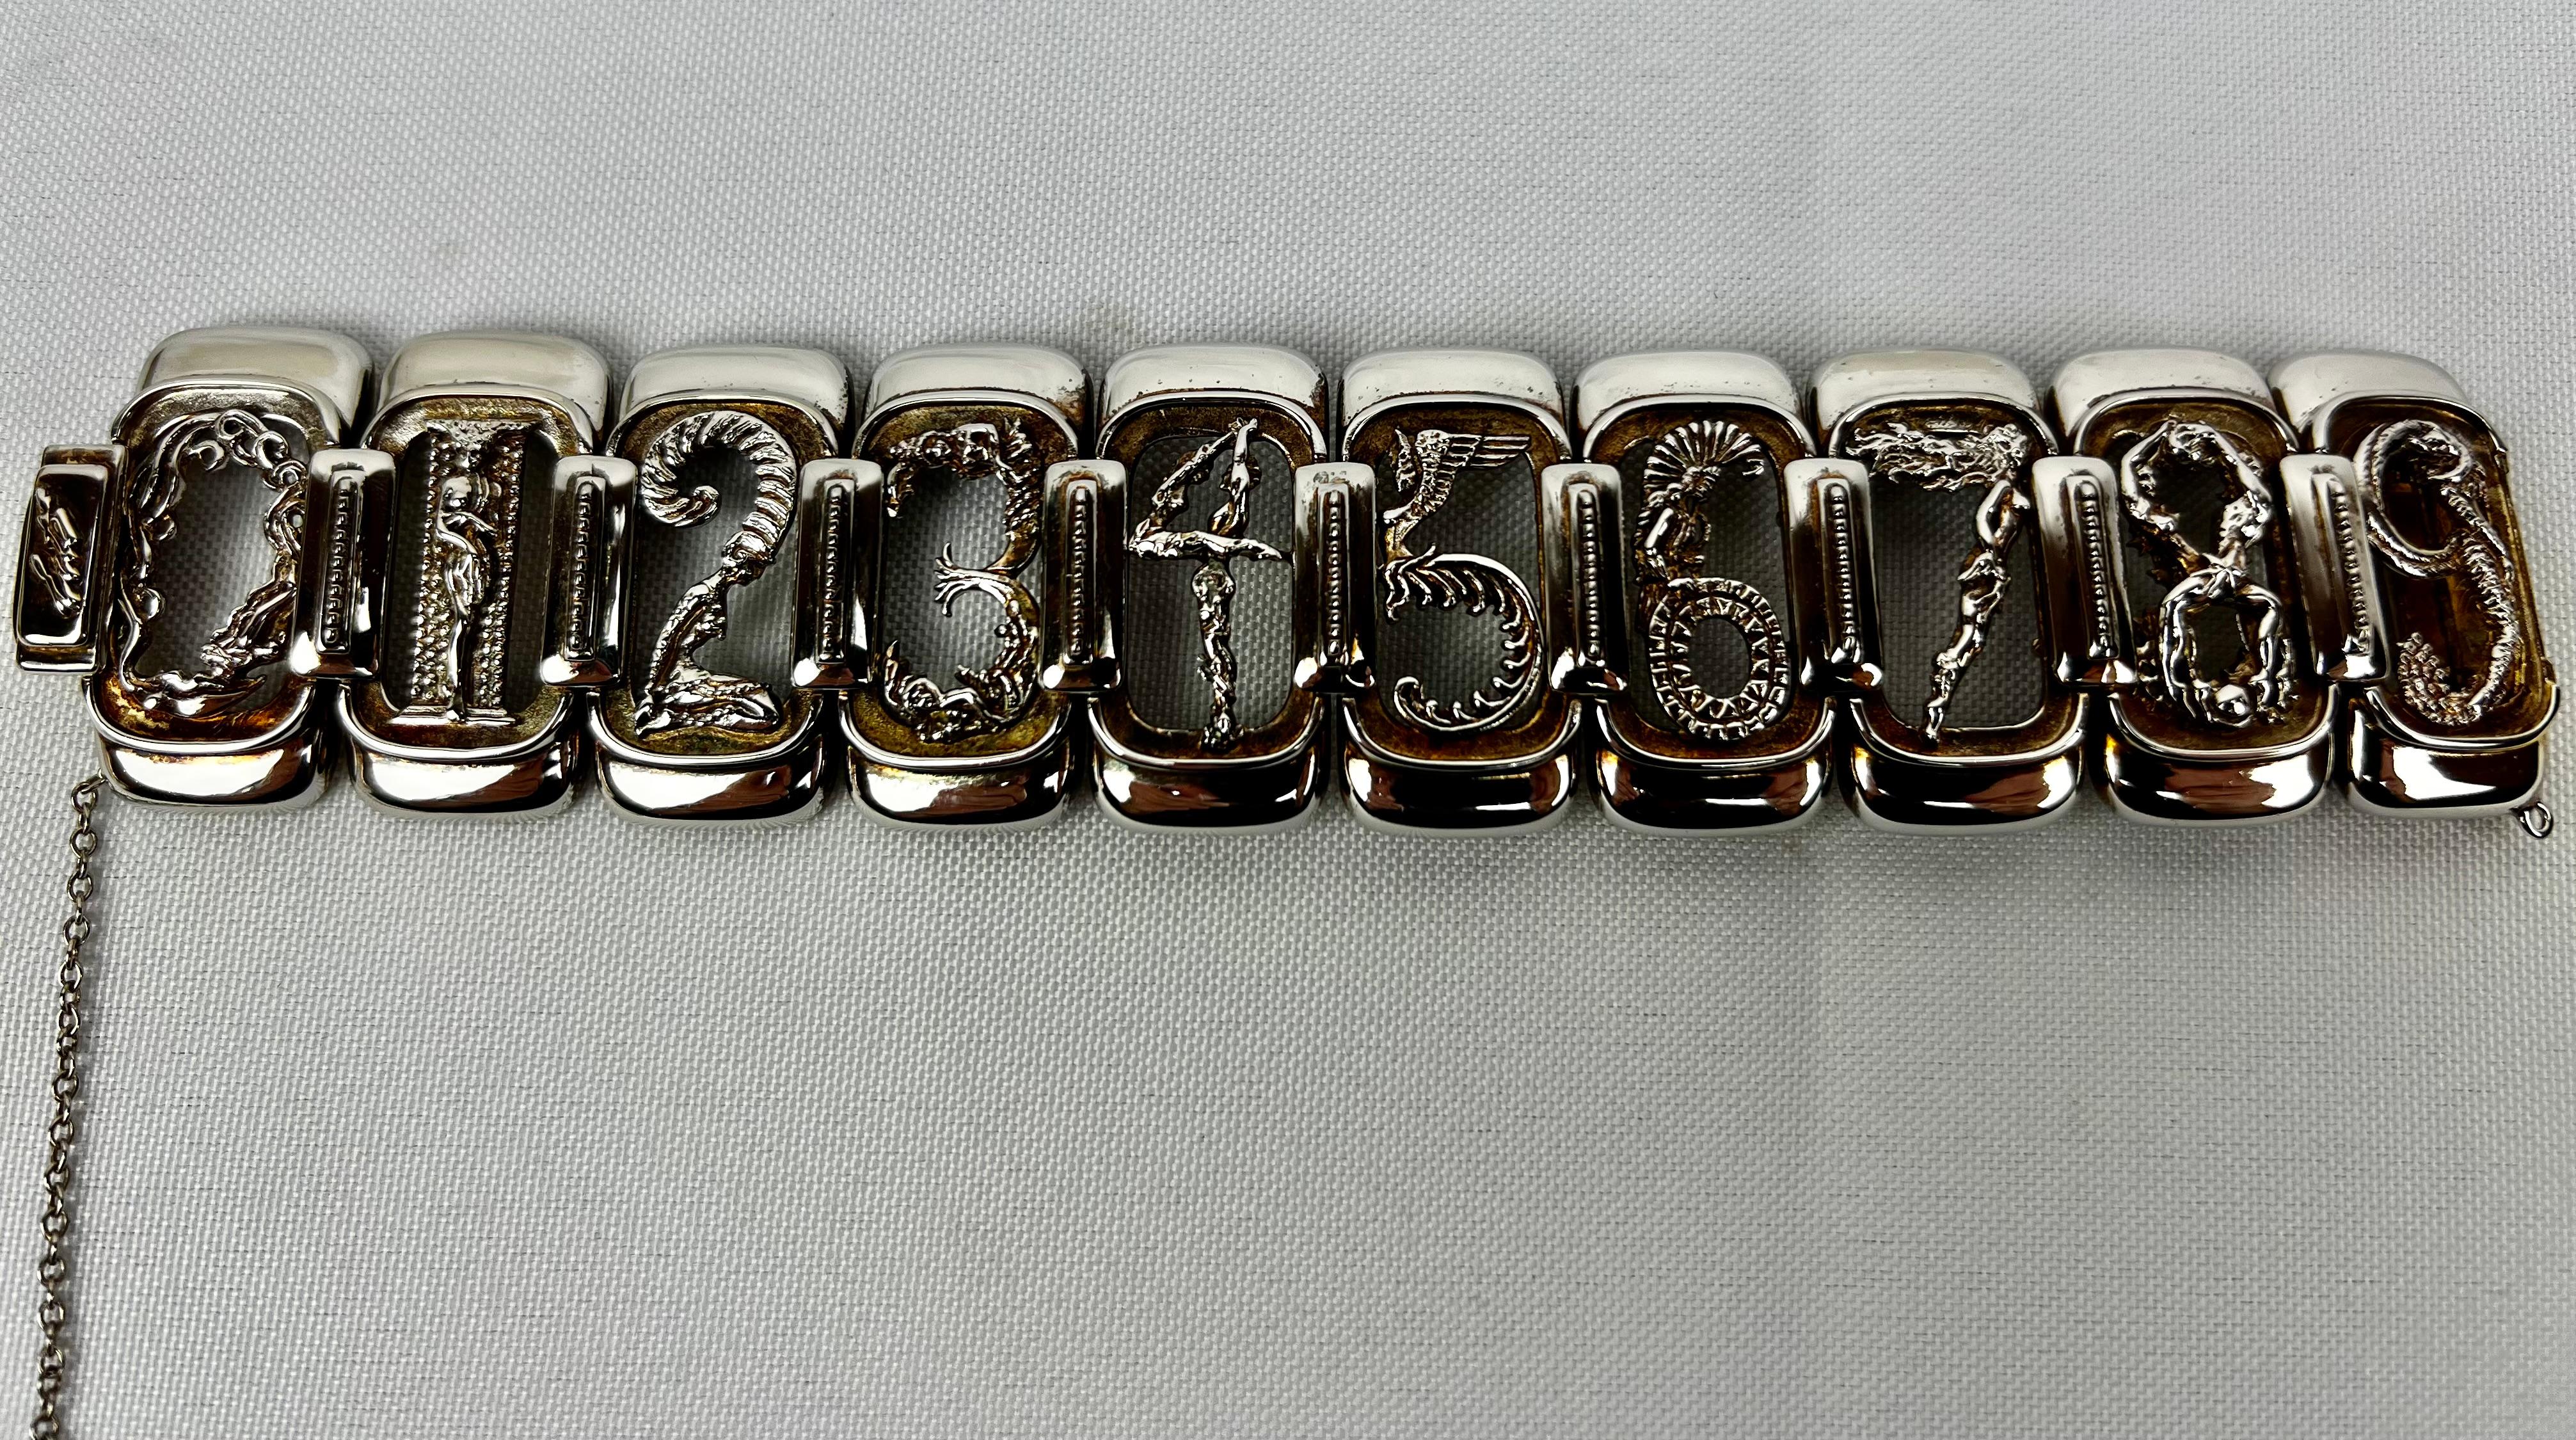 Erté  (1892-1990) bracelet de chiffres figuratifs en argent sterling et vermeil réalisé pour Circle Fine Art Galleries.
Les liens 0 à 9 représentent chacun une forme féminine.  Le bracelet est doté d'un fermoir en forme de boîte et d'une chaîne de